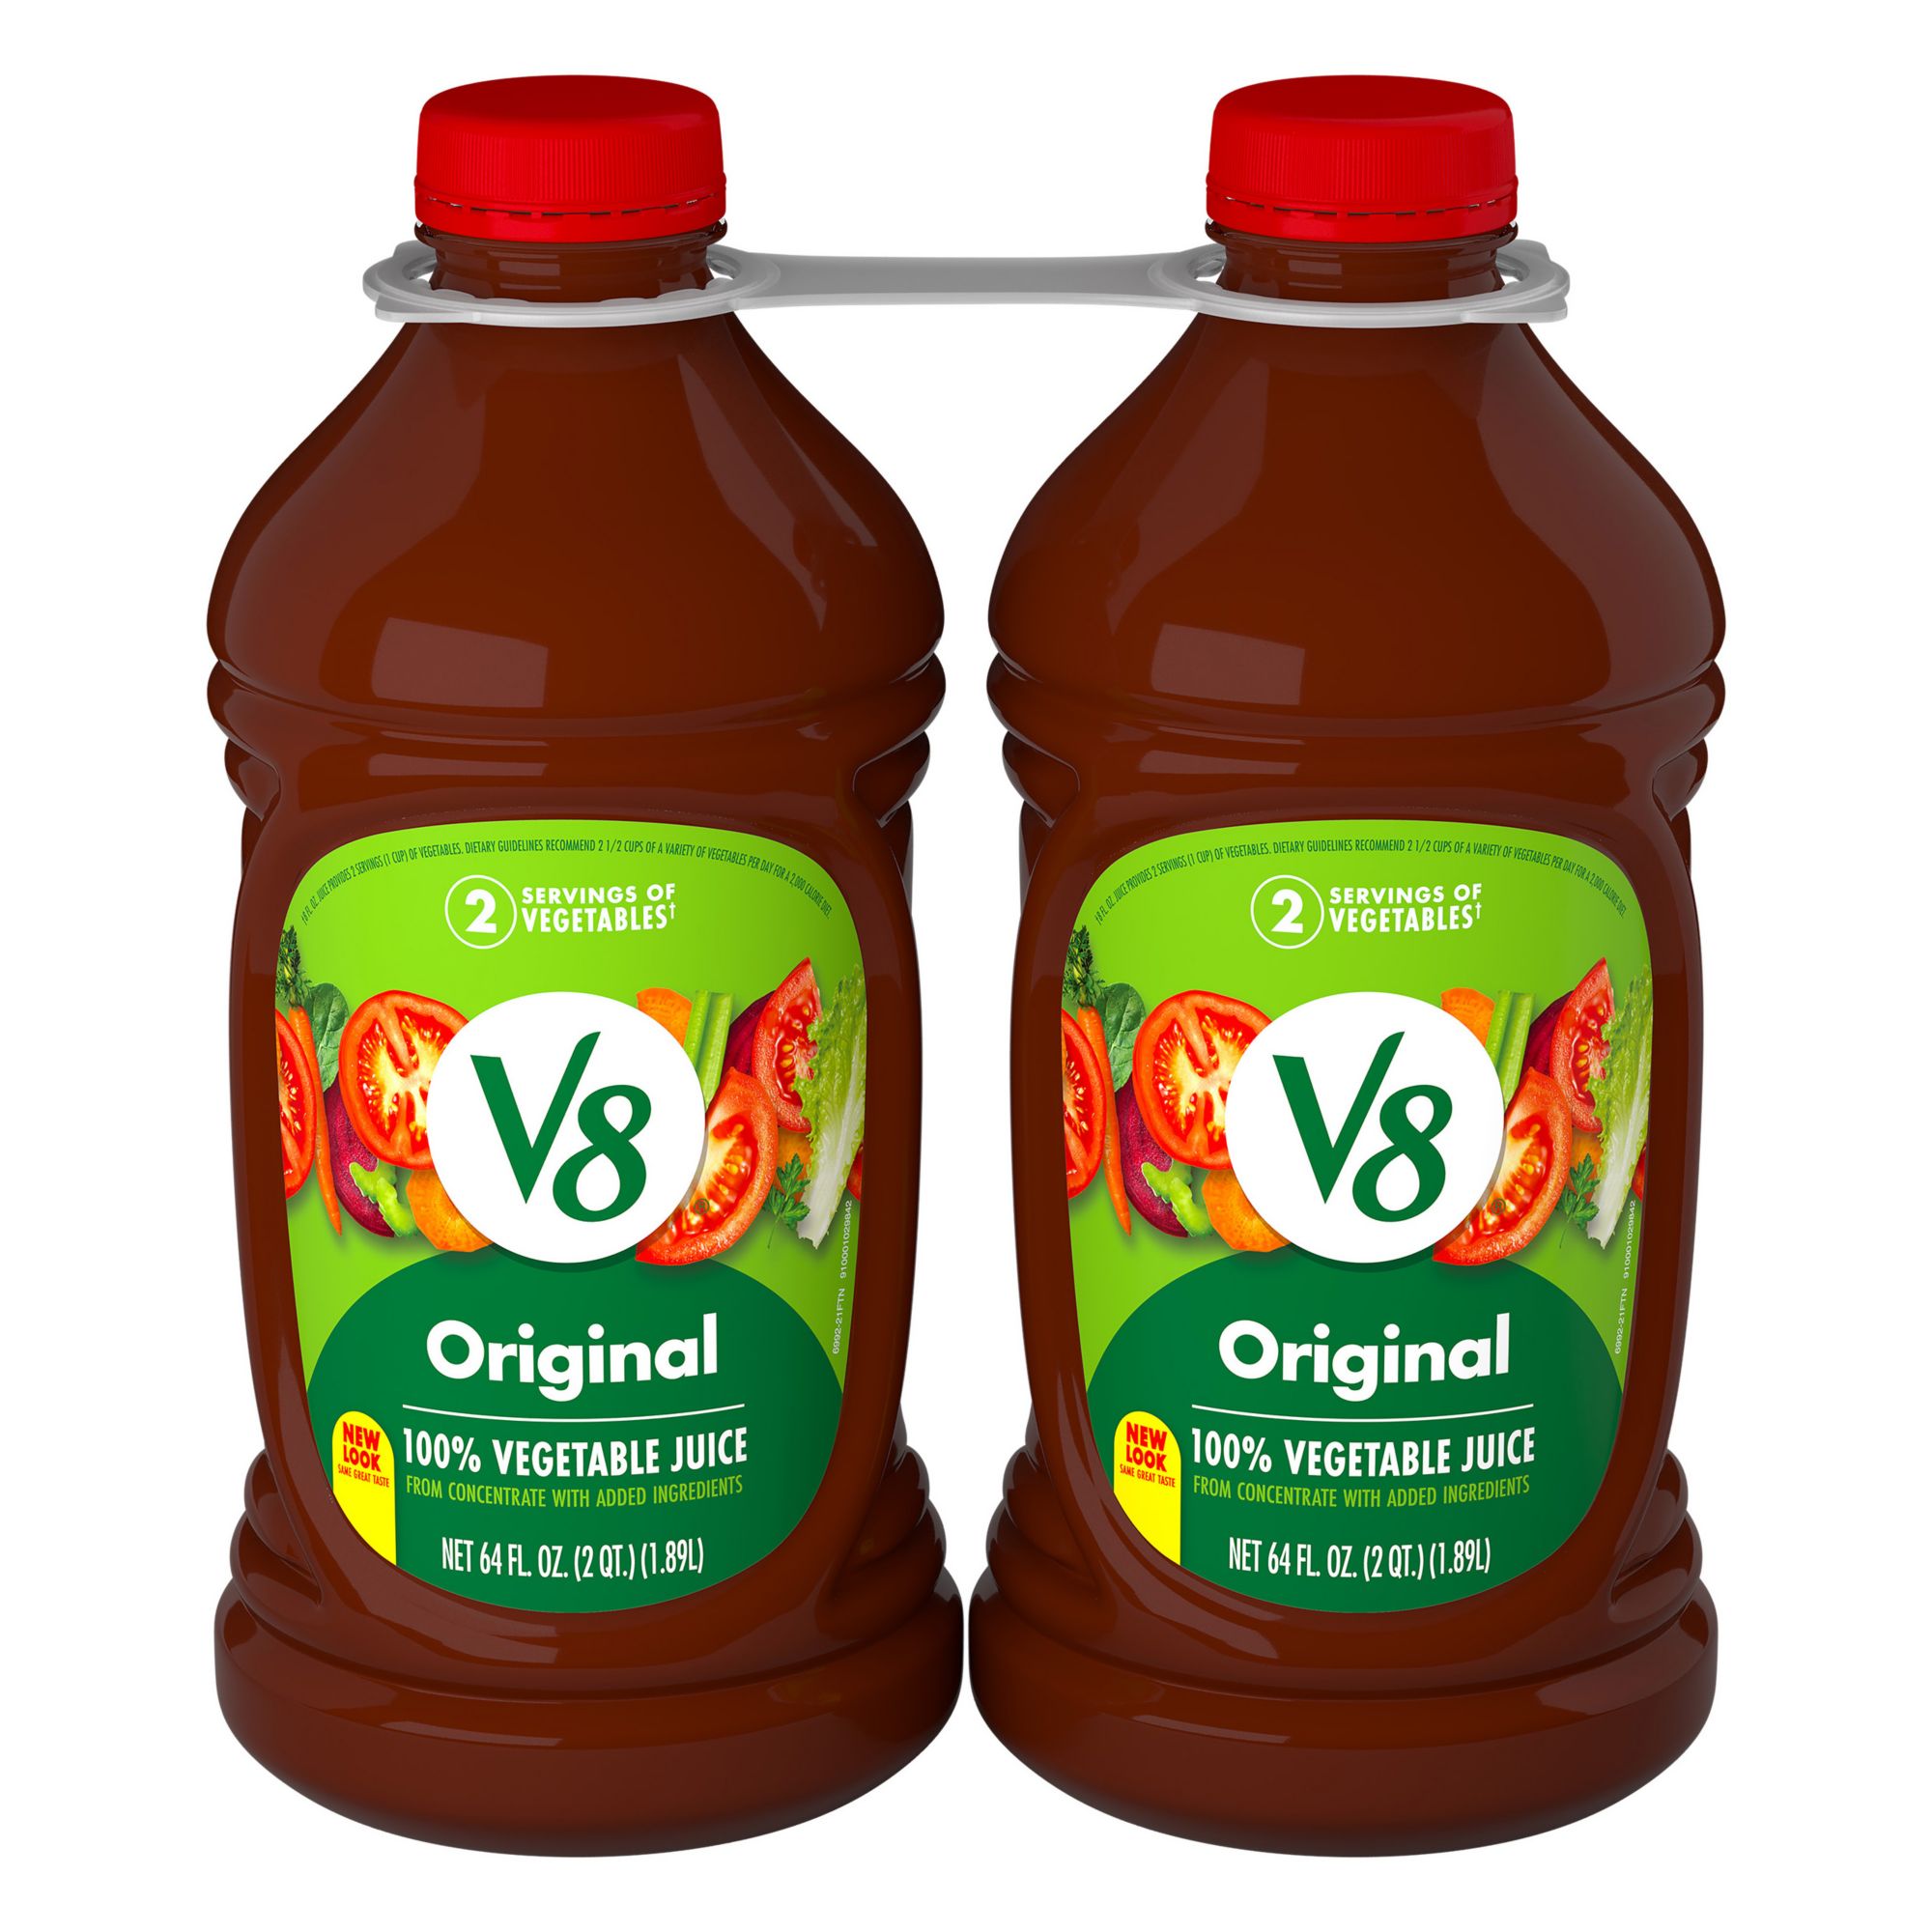 V8 Original 100% Vegetable Juice, 2 pk./64 oz.